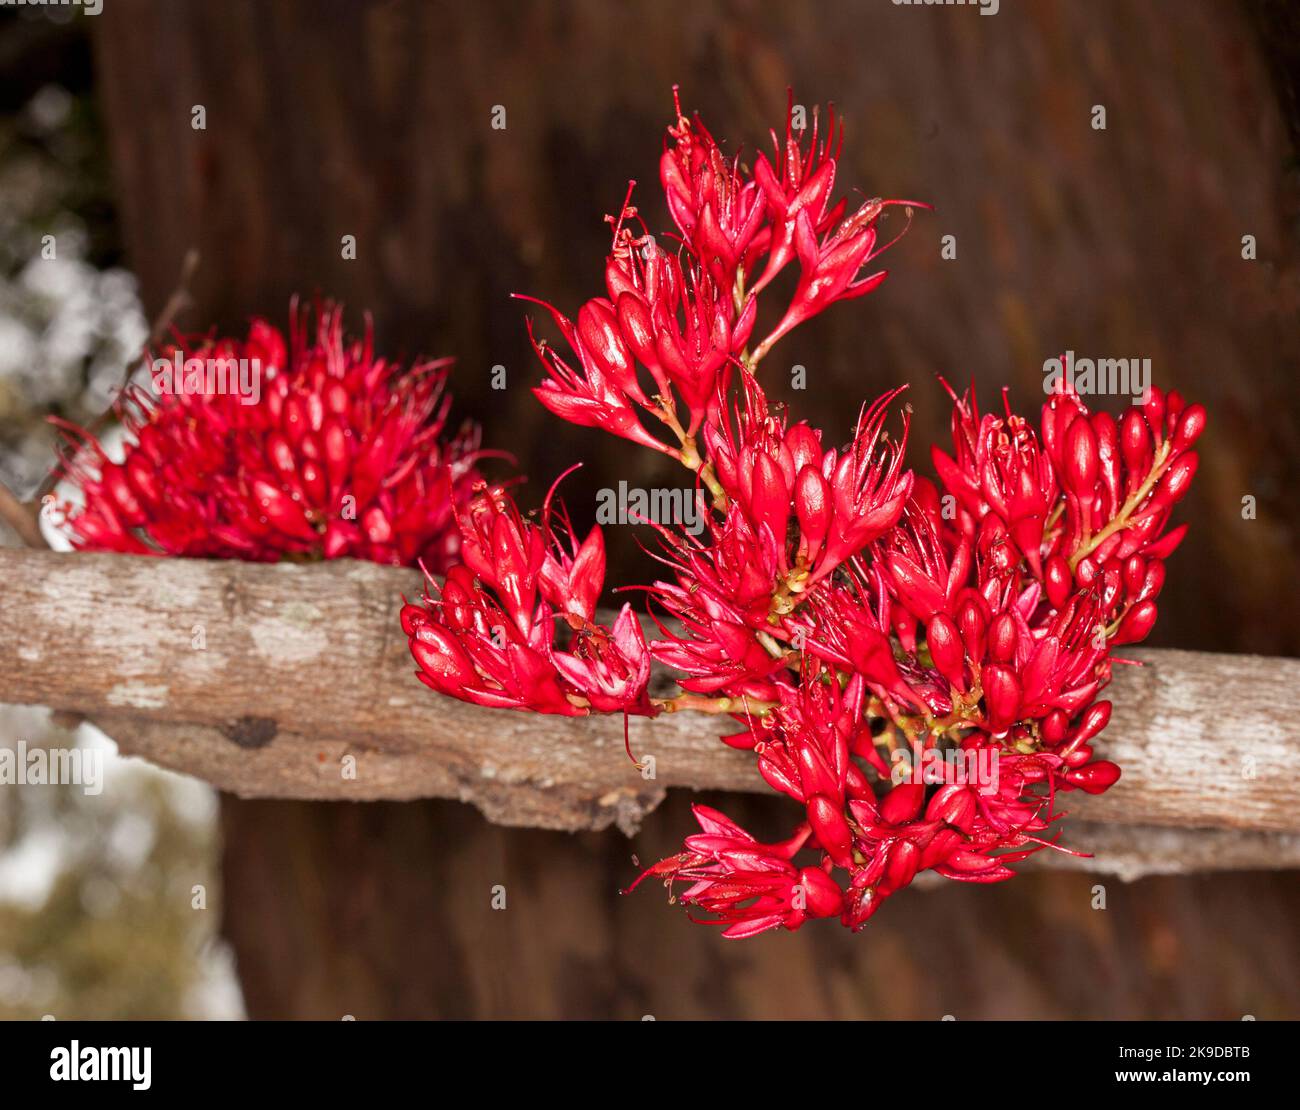 Ensemble de fleurs rouges vif chargées de nectar de Schotia brachypetala, arbre perroquet saoul, sur fond brun foncé, en Australie Banque D'Images